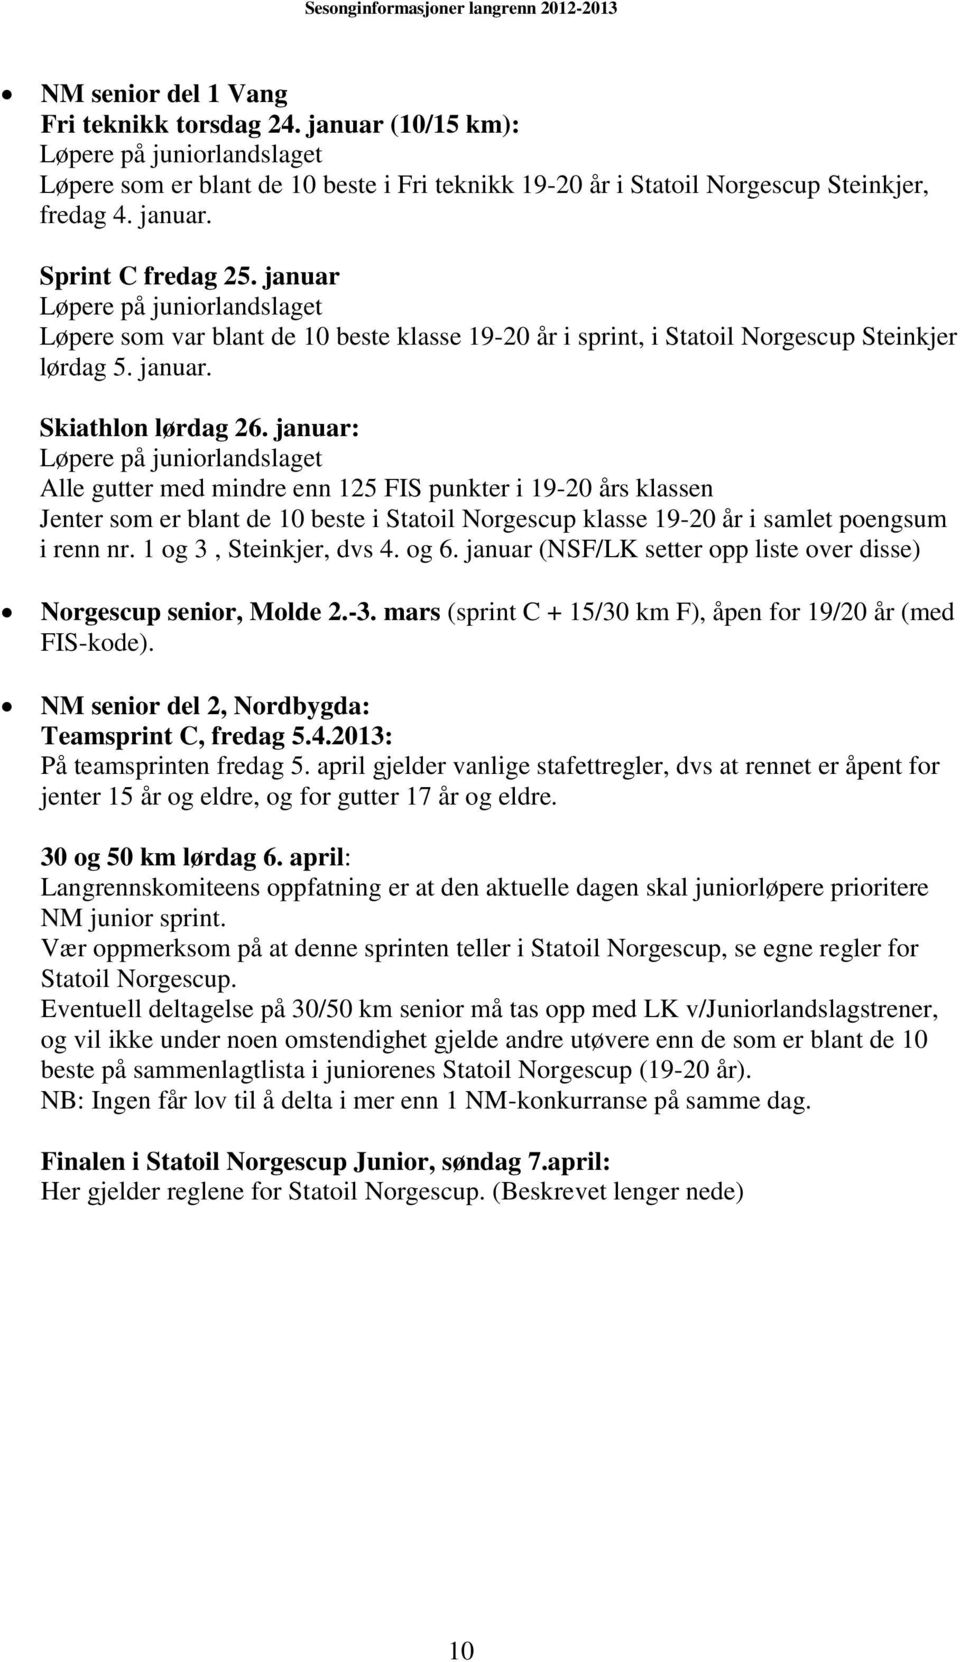 januar: Løpere på juniorlandslaget Alle gutter med mindre enn 125 FIS punkter i 19-20 års klassen Jenter som er blant de 10 beste i Statoil Norgescup klasse 19-20 år i samlet poengsum i renn nr.